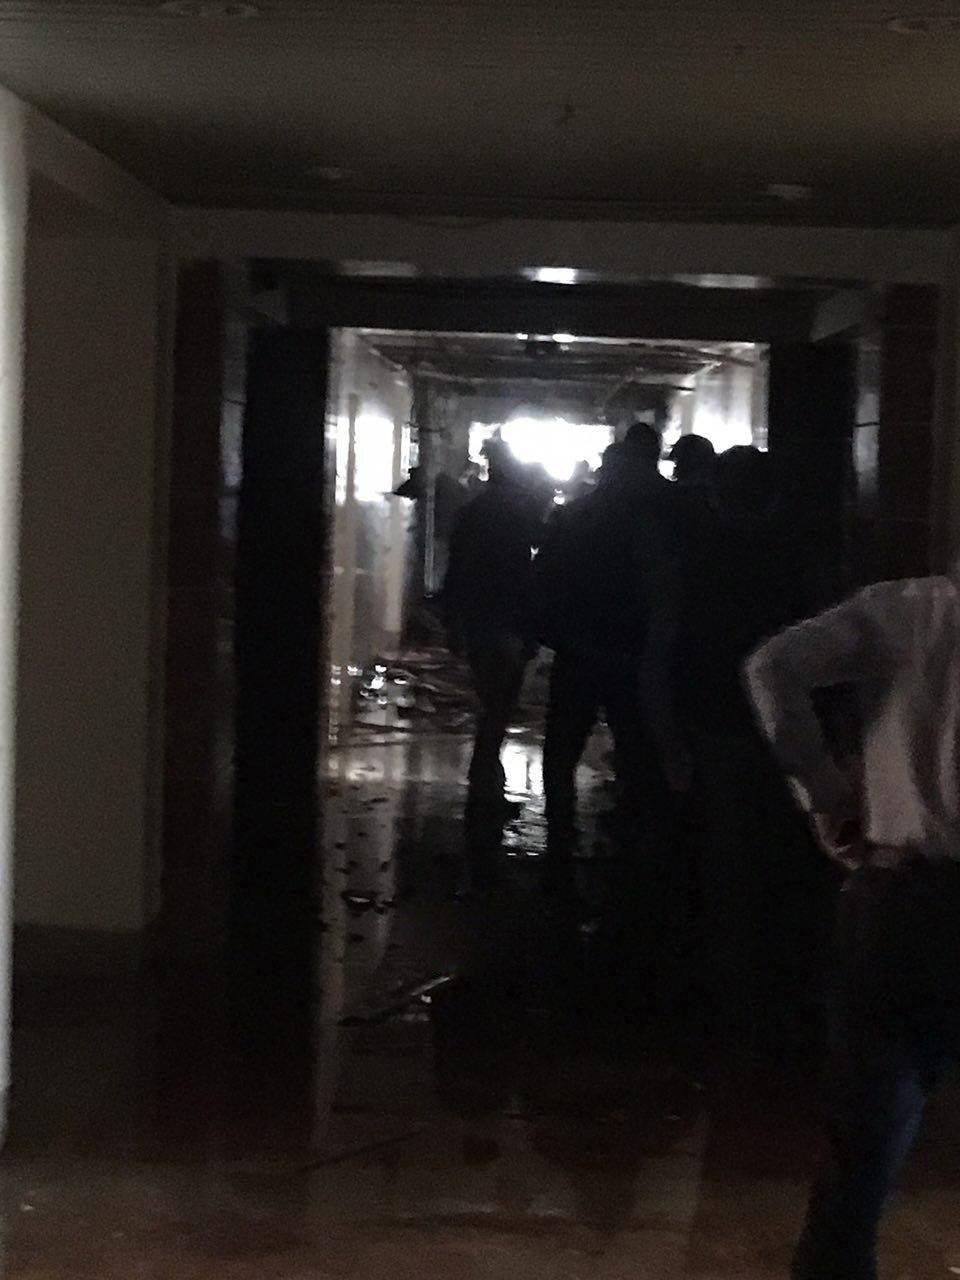 پایان عملیات تروریستی در ساختمان مجلس با هلاکت تمامی تروریستها (عکس)//تمام کشور وارد آماده باش شد